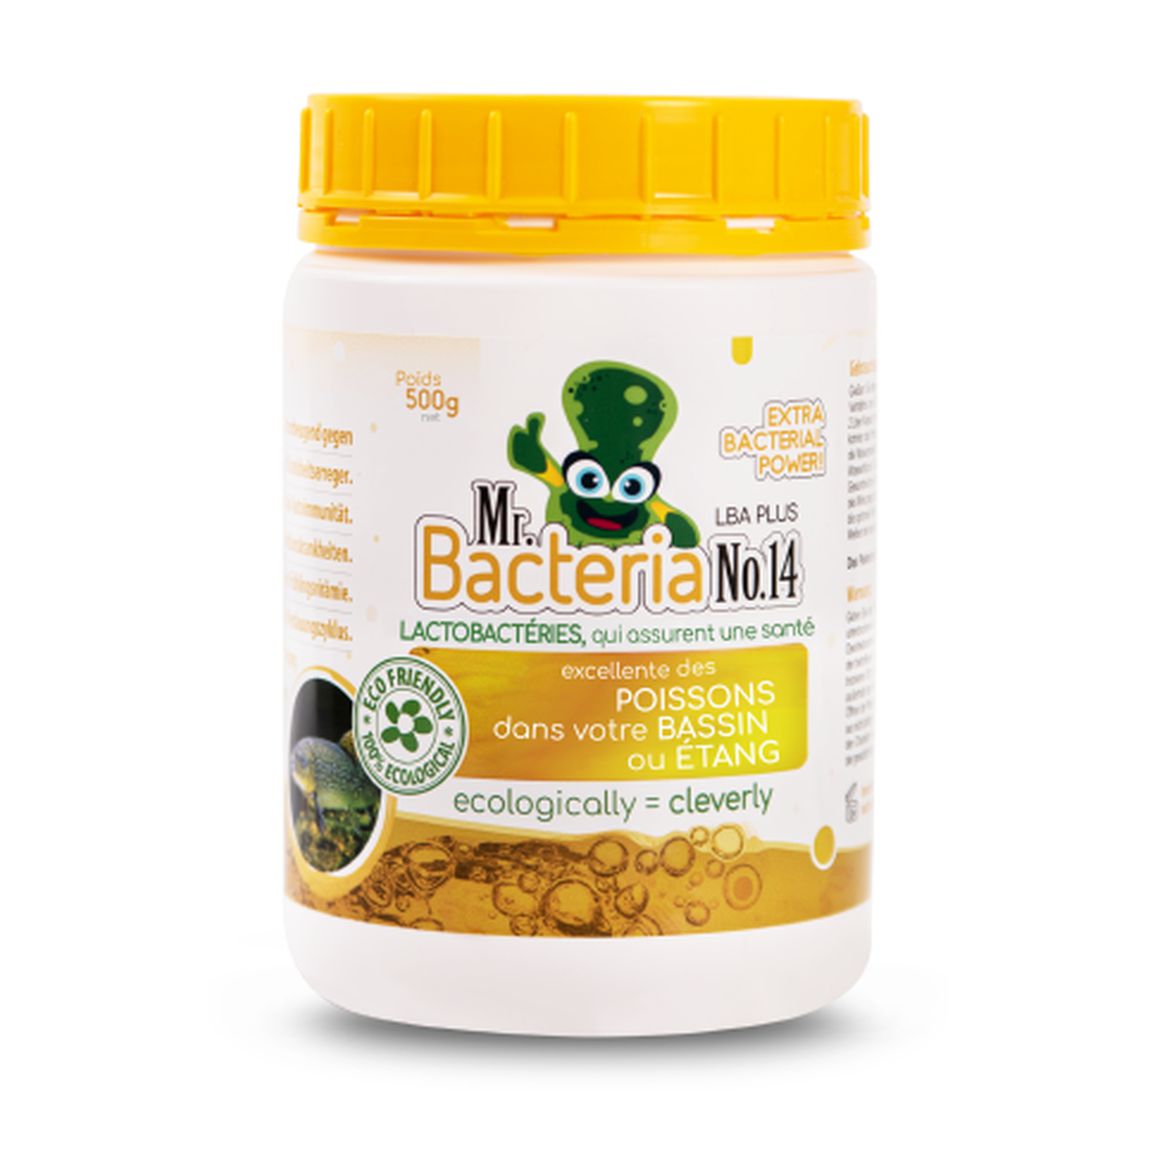 Lactobactéries, qui assurent une santé excellente des POISSONS dans votre BASSIN ou ÉTANG 500g (Bactérie pour bassin)